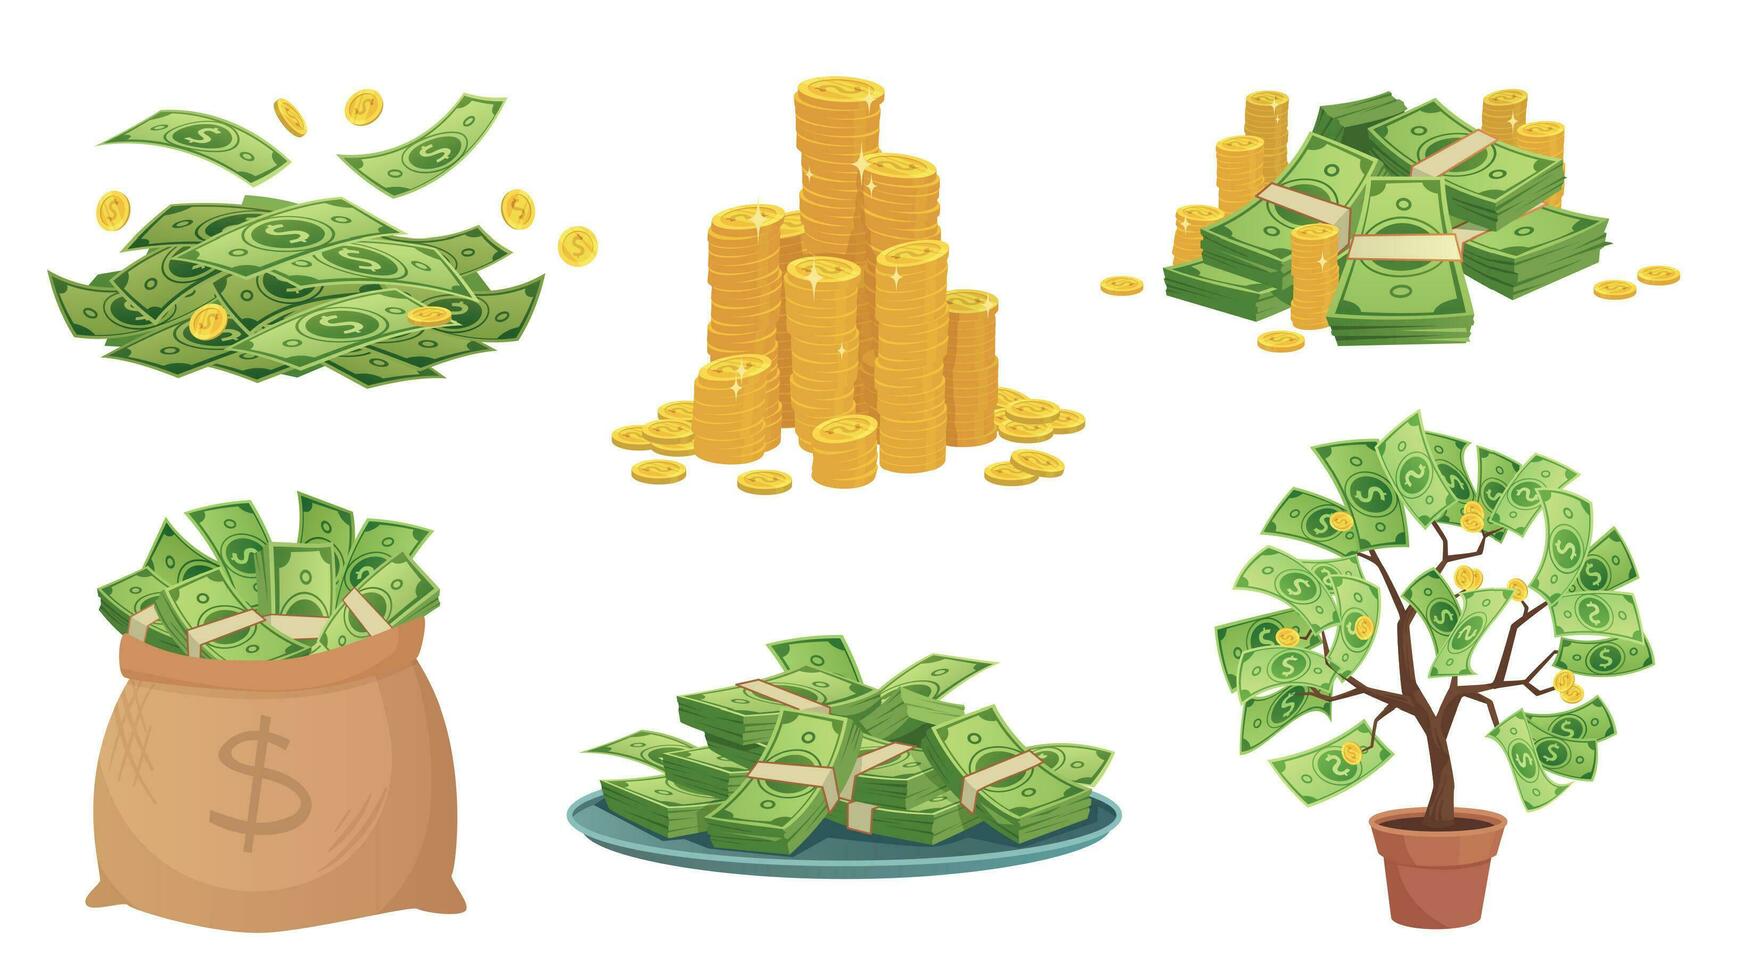 tecknad serie kontanter. grön dollar sedlar lugg, rik guld mynt och betala. kontanter väska, bricka med stackar av räkningar och pengar träd vektor illustration uppsättning